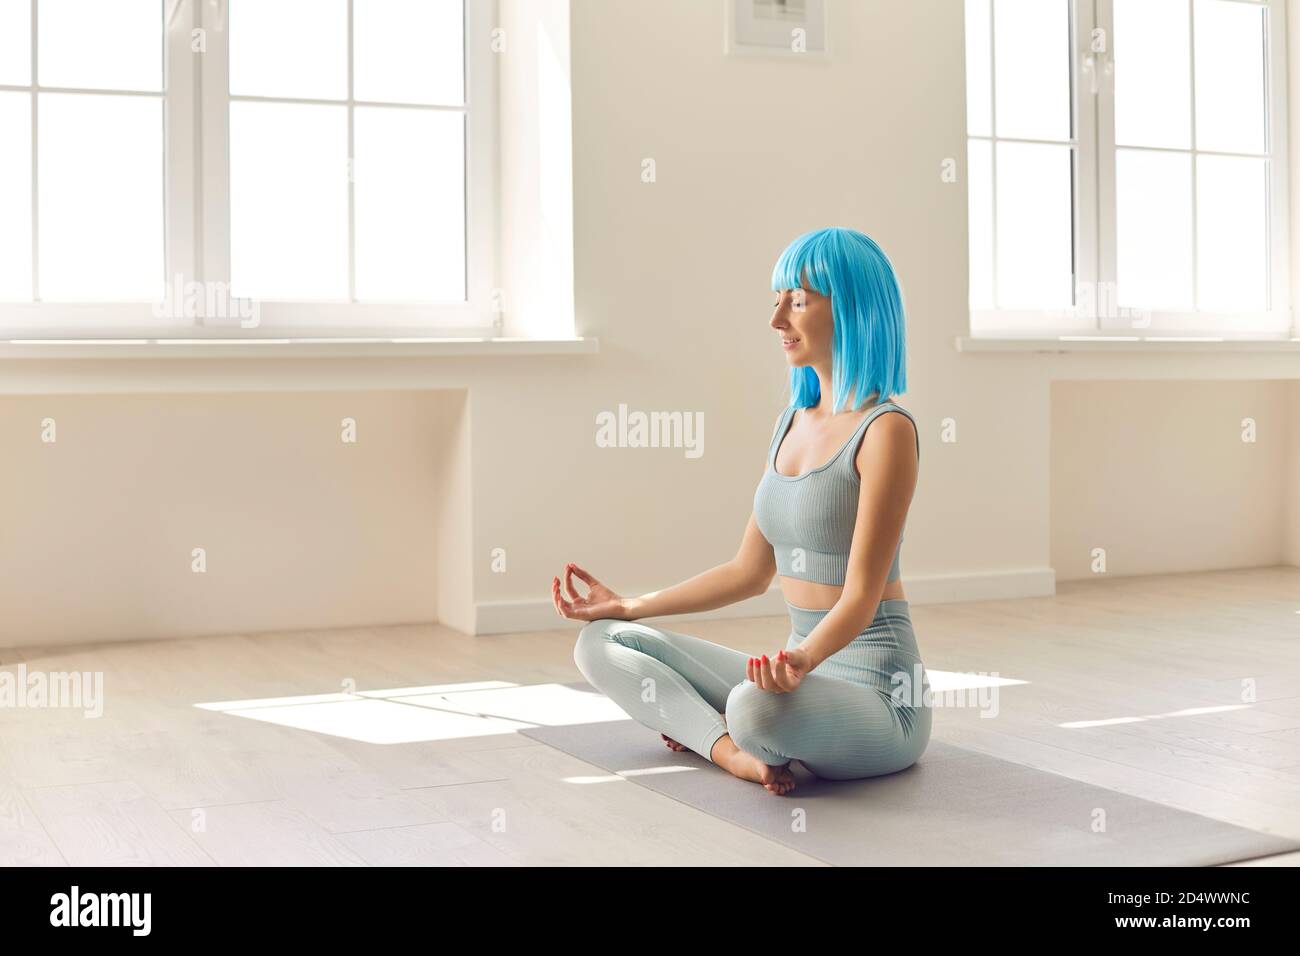 Jeune fille assise en position facile sur le tapis de yoga avec les yeux fermés pratiquant la méditation seule Banque D'Images